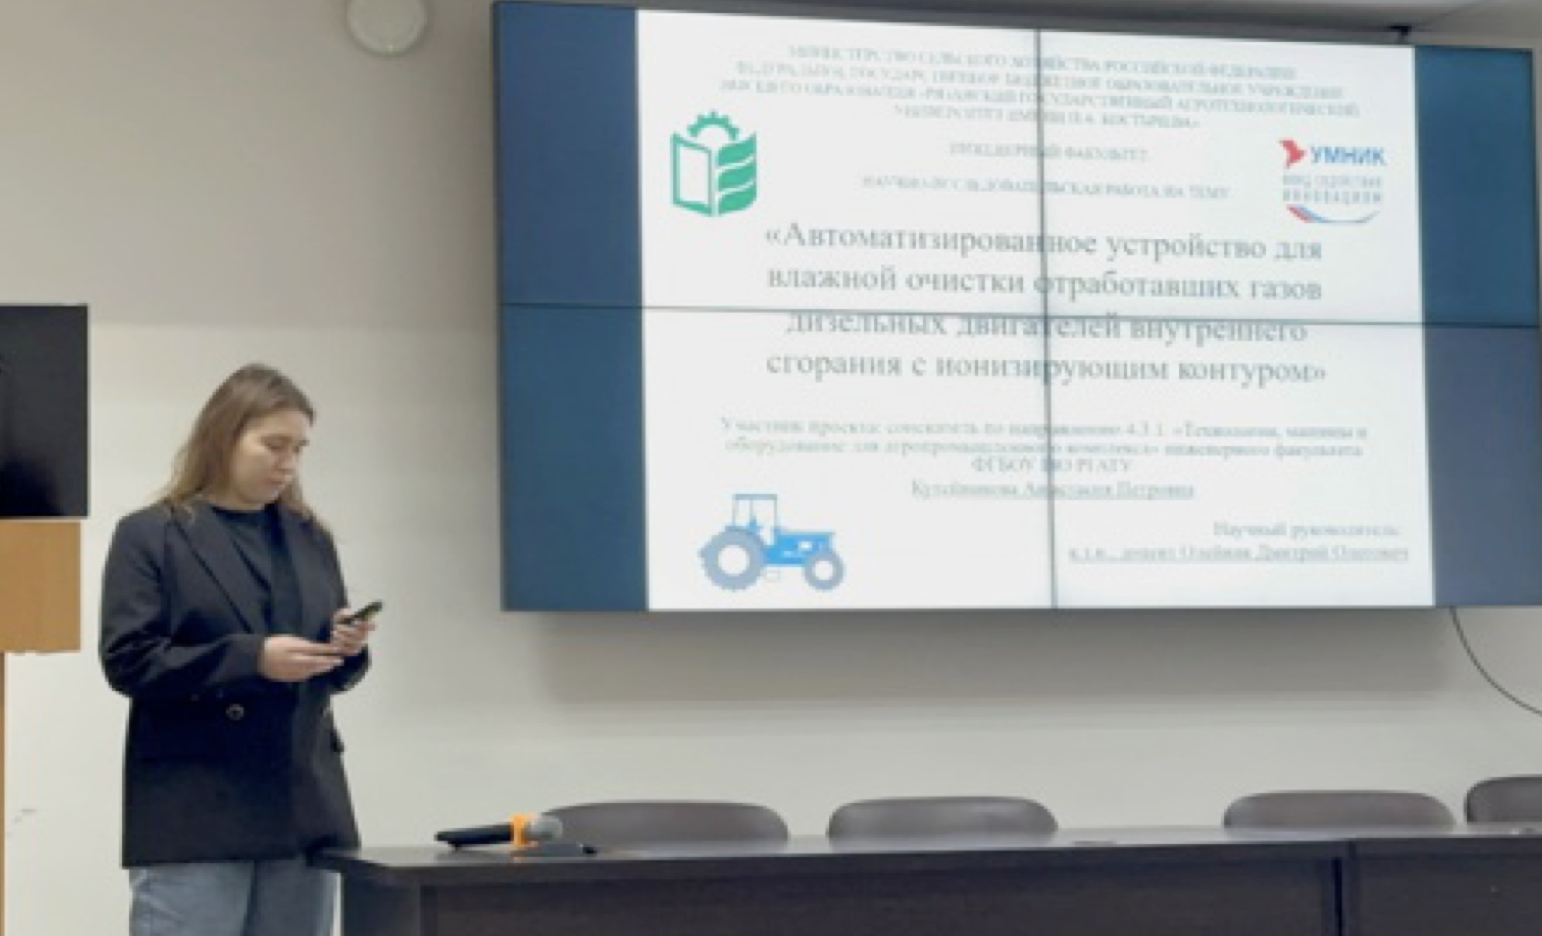 Представители Рязанского агротехнологического университета получили грантовую поддержку Фонда содействия инновациям